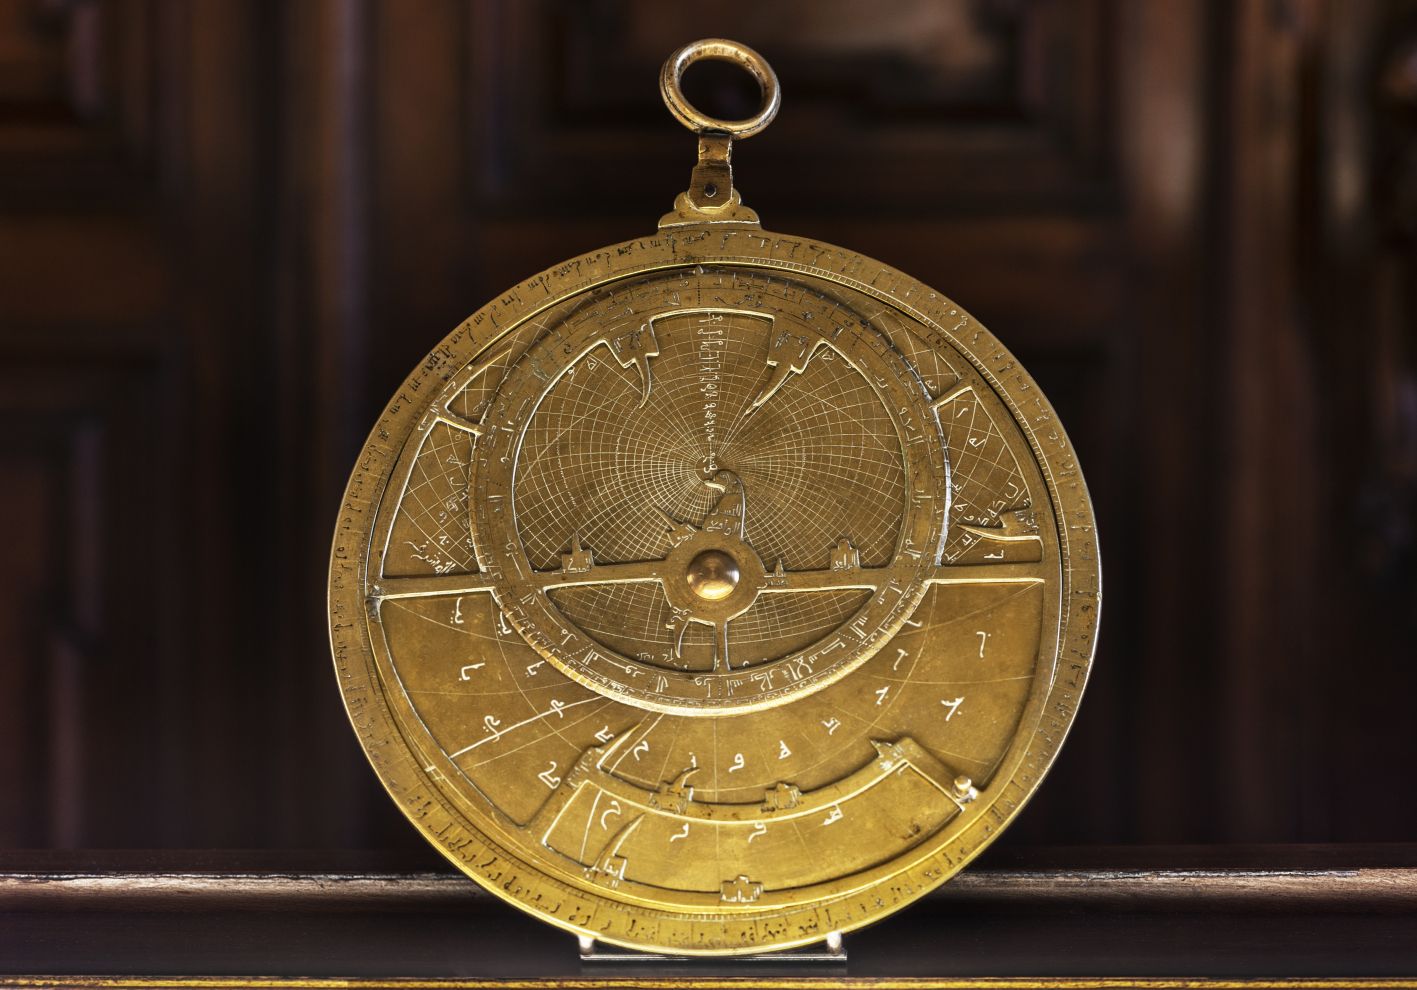 "The Verona astrolabe"